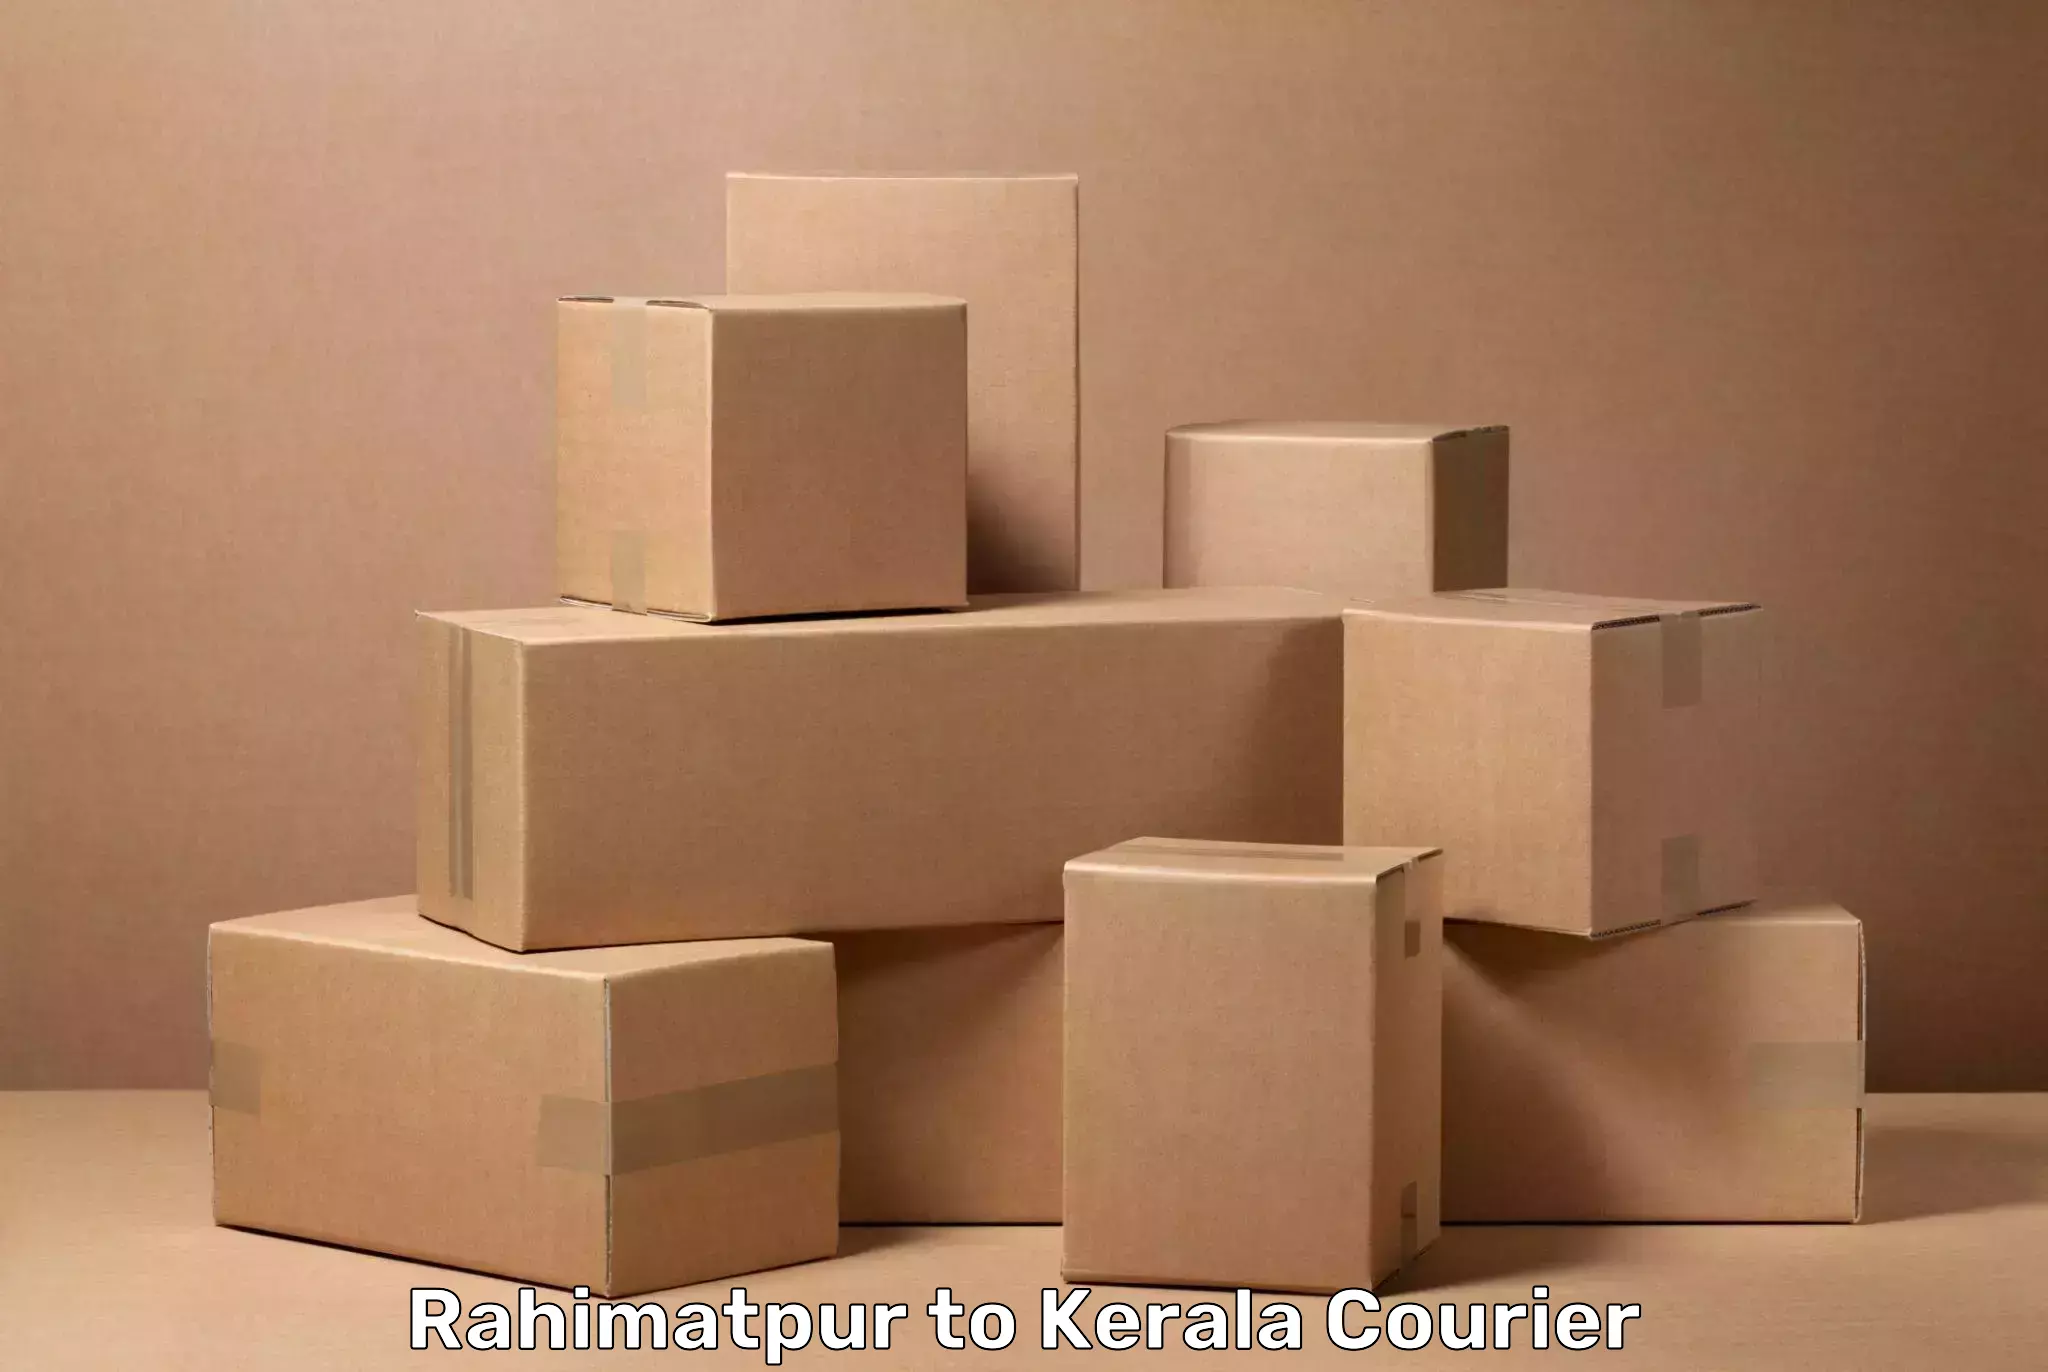 Suburban luggage delivery in Rahimatpur to IIIT Kottayam